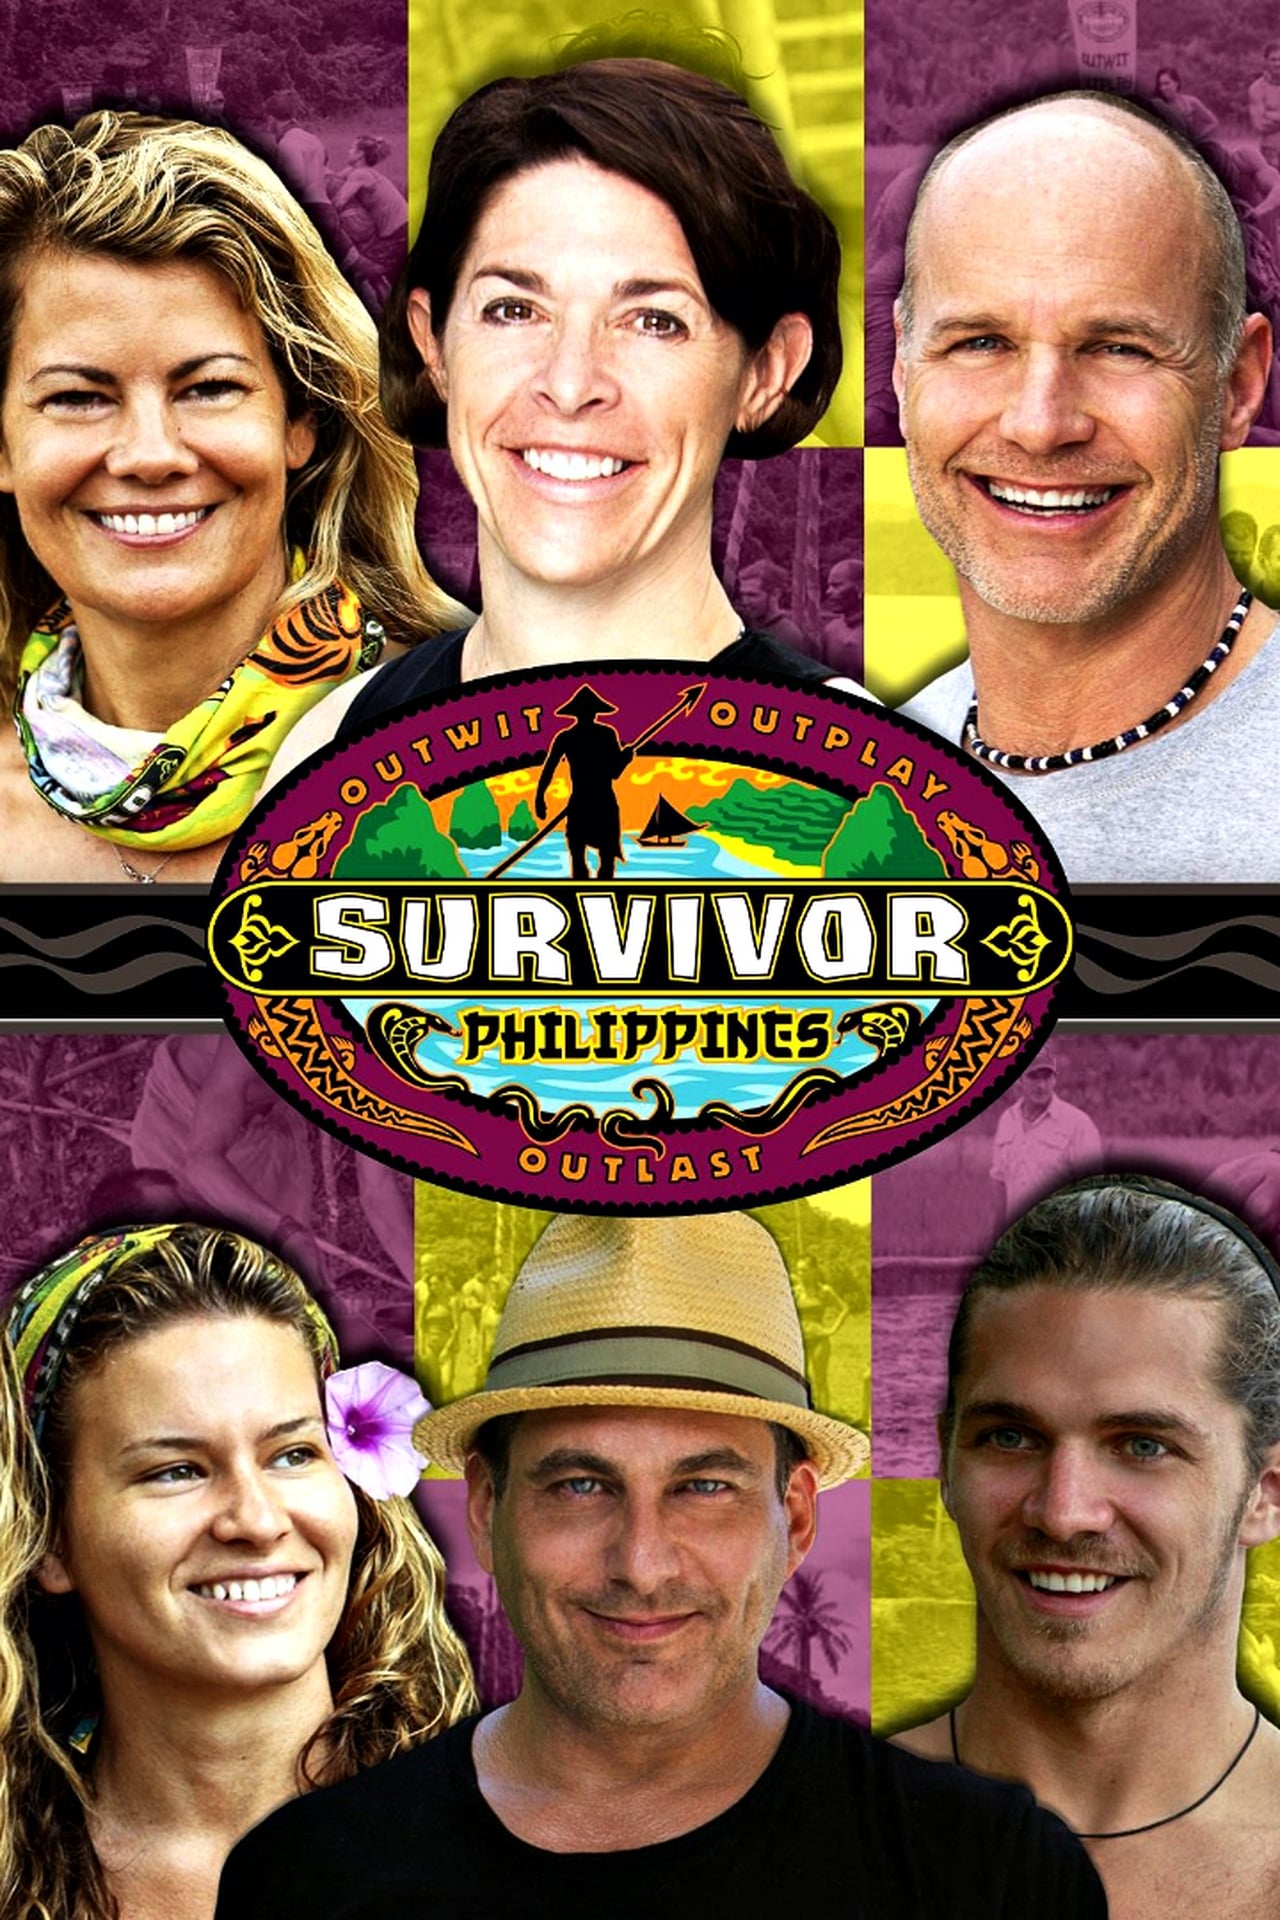 Survivor Season 25